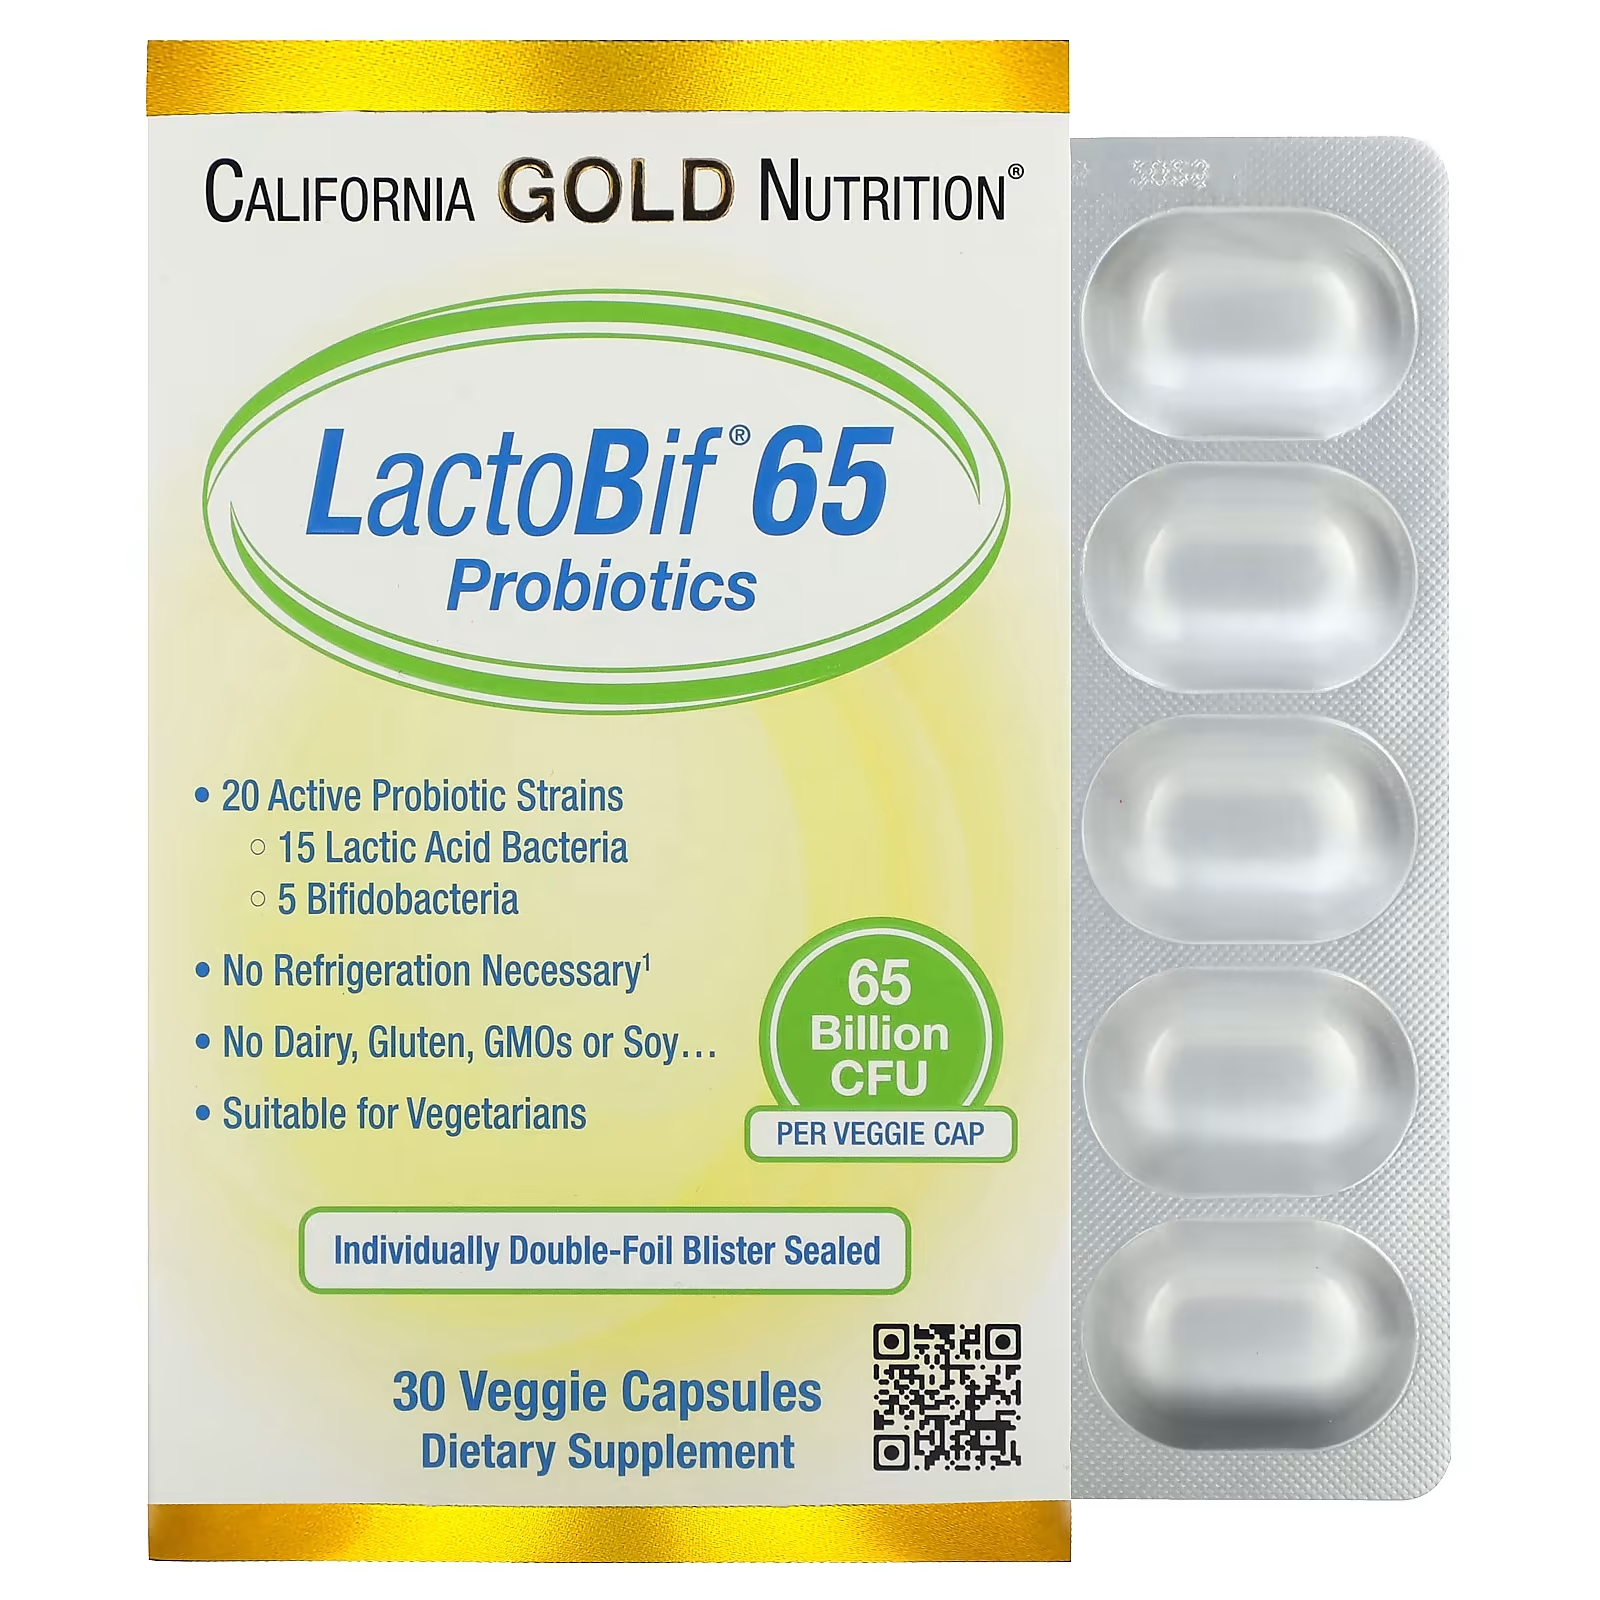 California Gold Nutrition LactoBif 65 Пробиотики 65 миллиардов КОЕ 30 растительных капсул пробиотики lactobif 100 миллиардов кое 30 капсул california gold nutrition